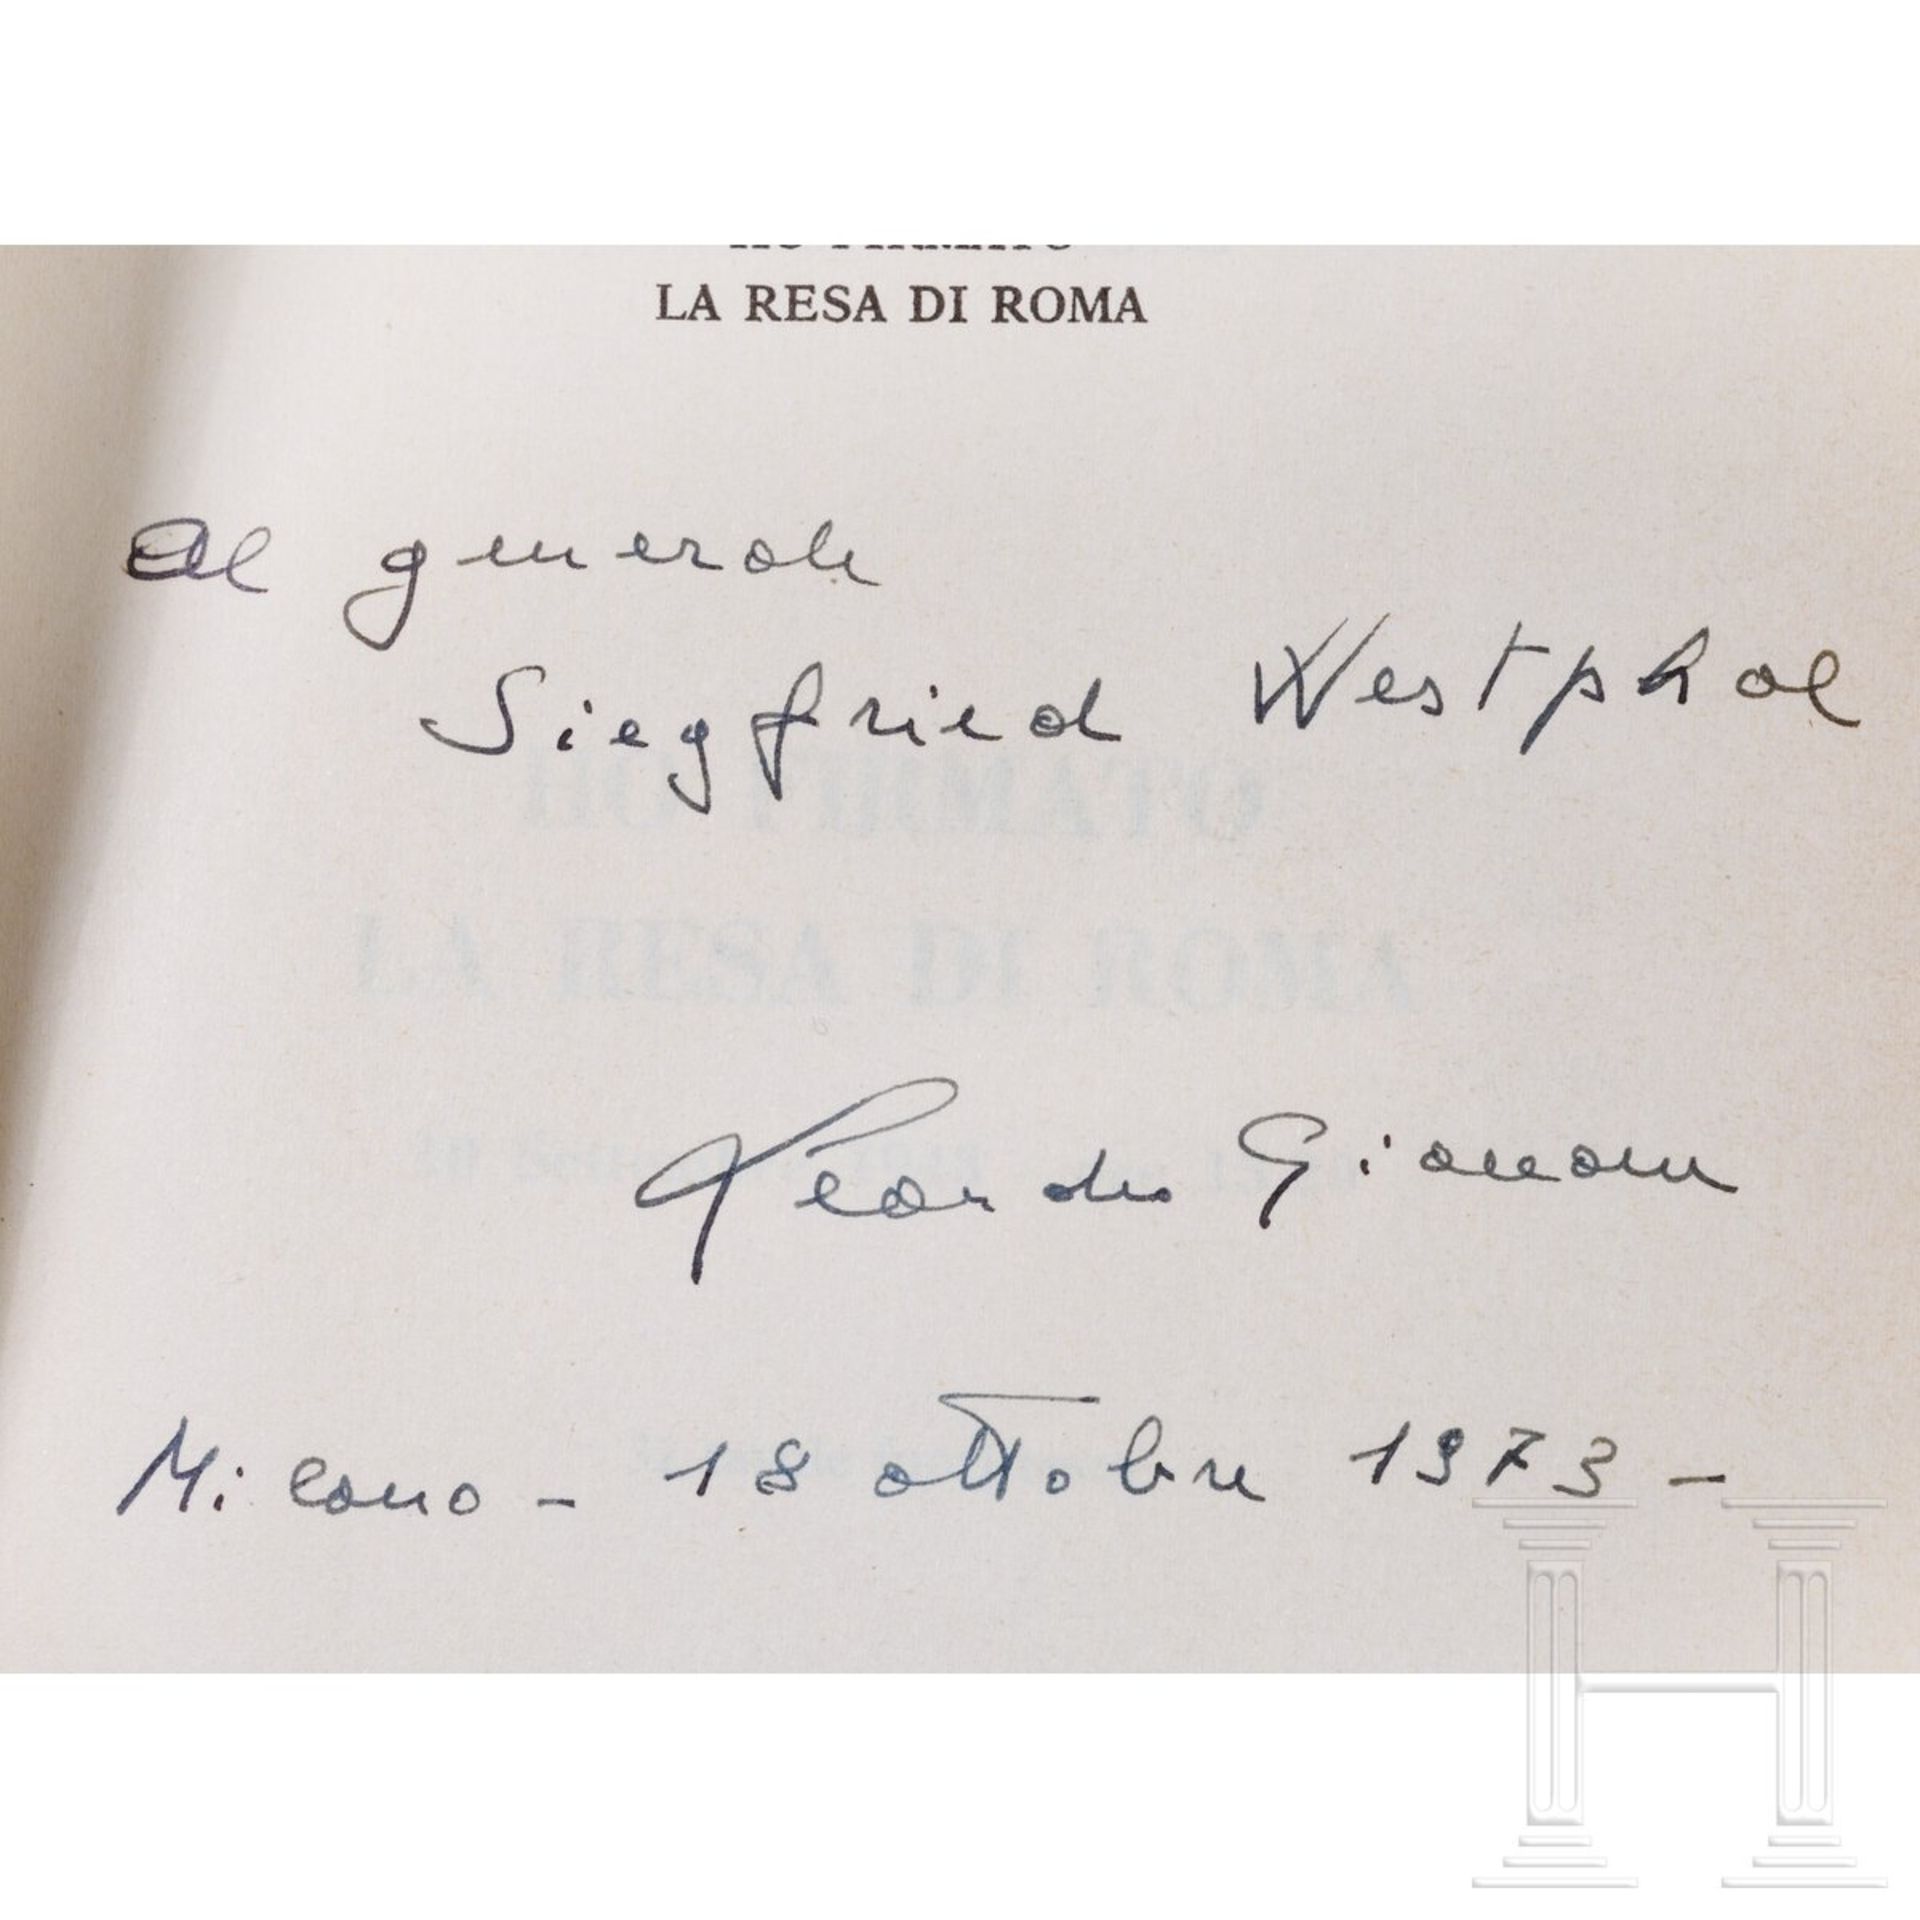 General Siegfried Westphal - sechs Bücher als Autor und sieben Fotos, auch mit dem Besuch bei Mohamm - Image 4 of 10